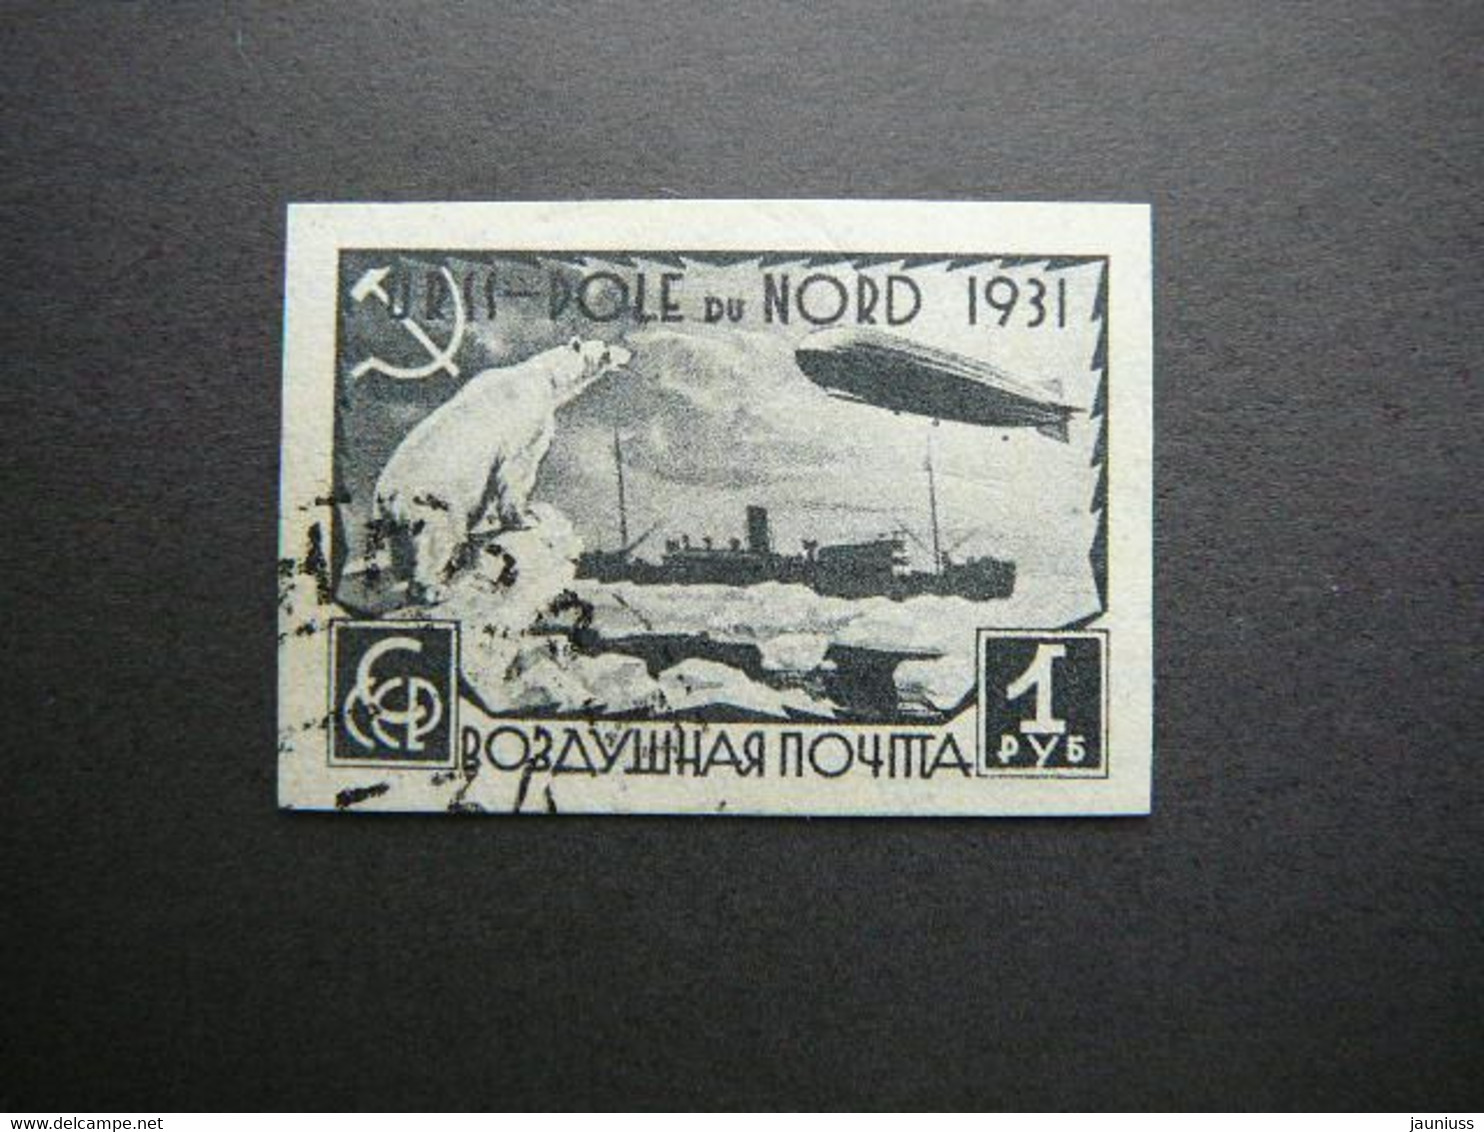 Icebreaker Malygin In Arctic # Russia USSR Sowjetunion # 1931 Used #Mi. 404 B Ships Zeppelin - Oblitérés